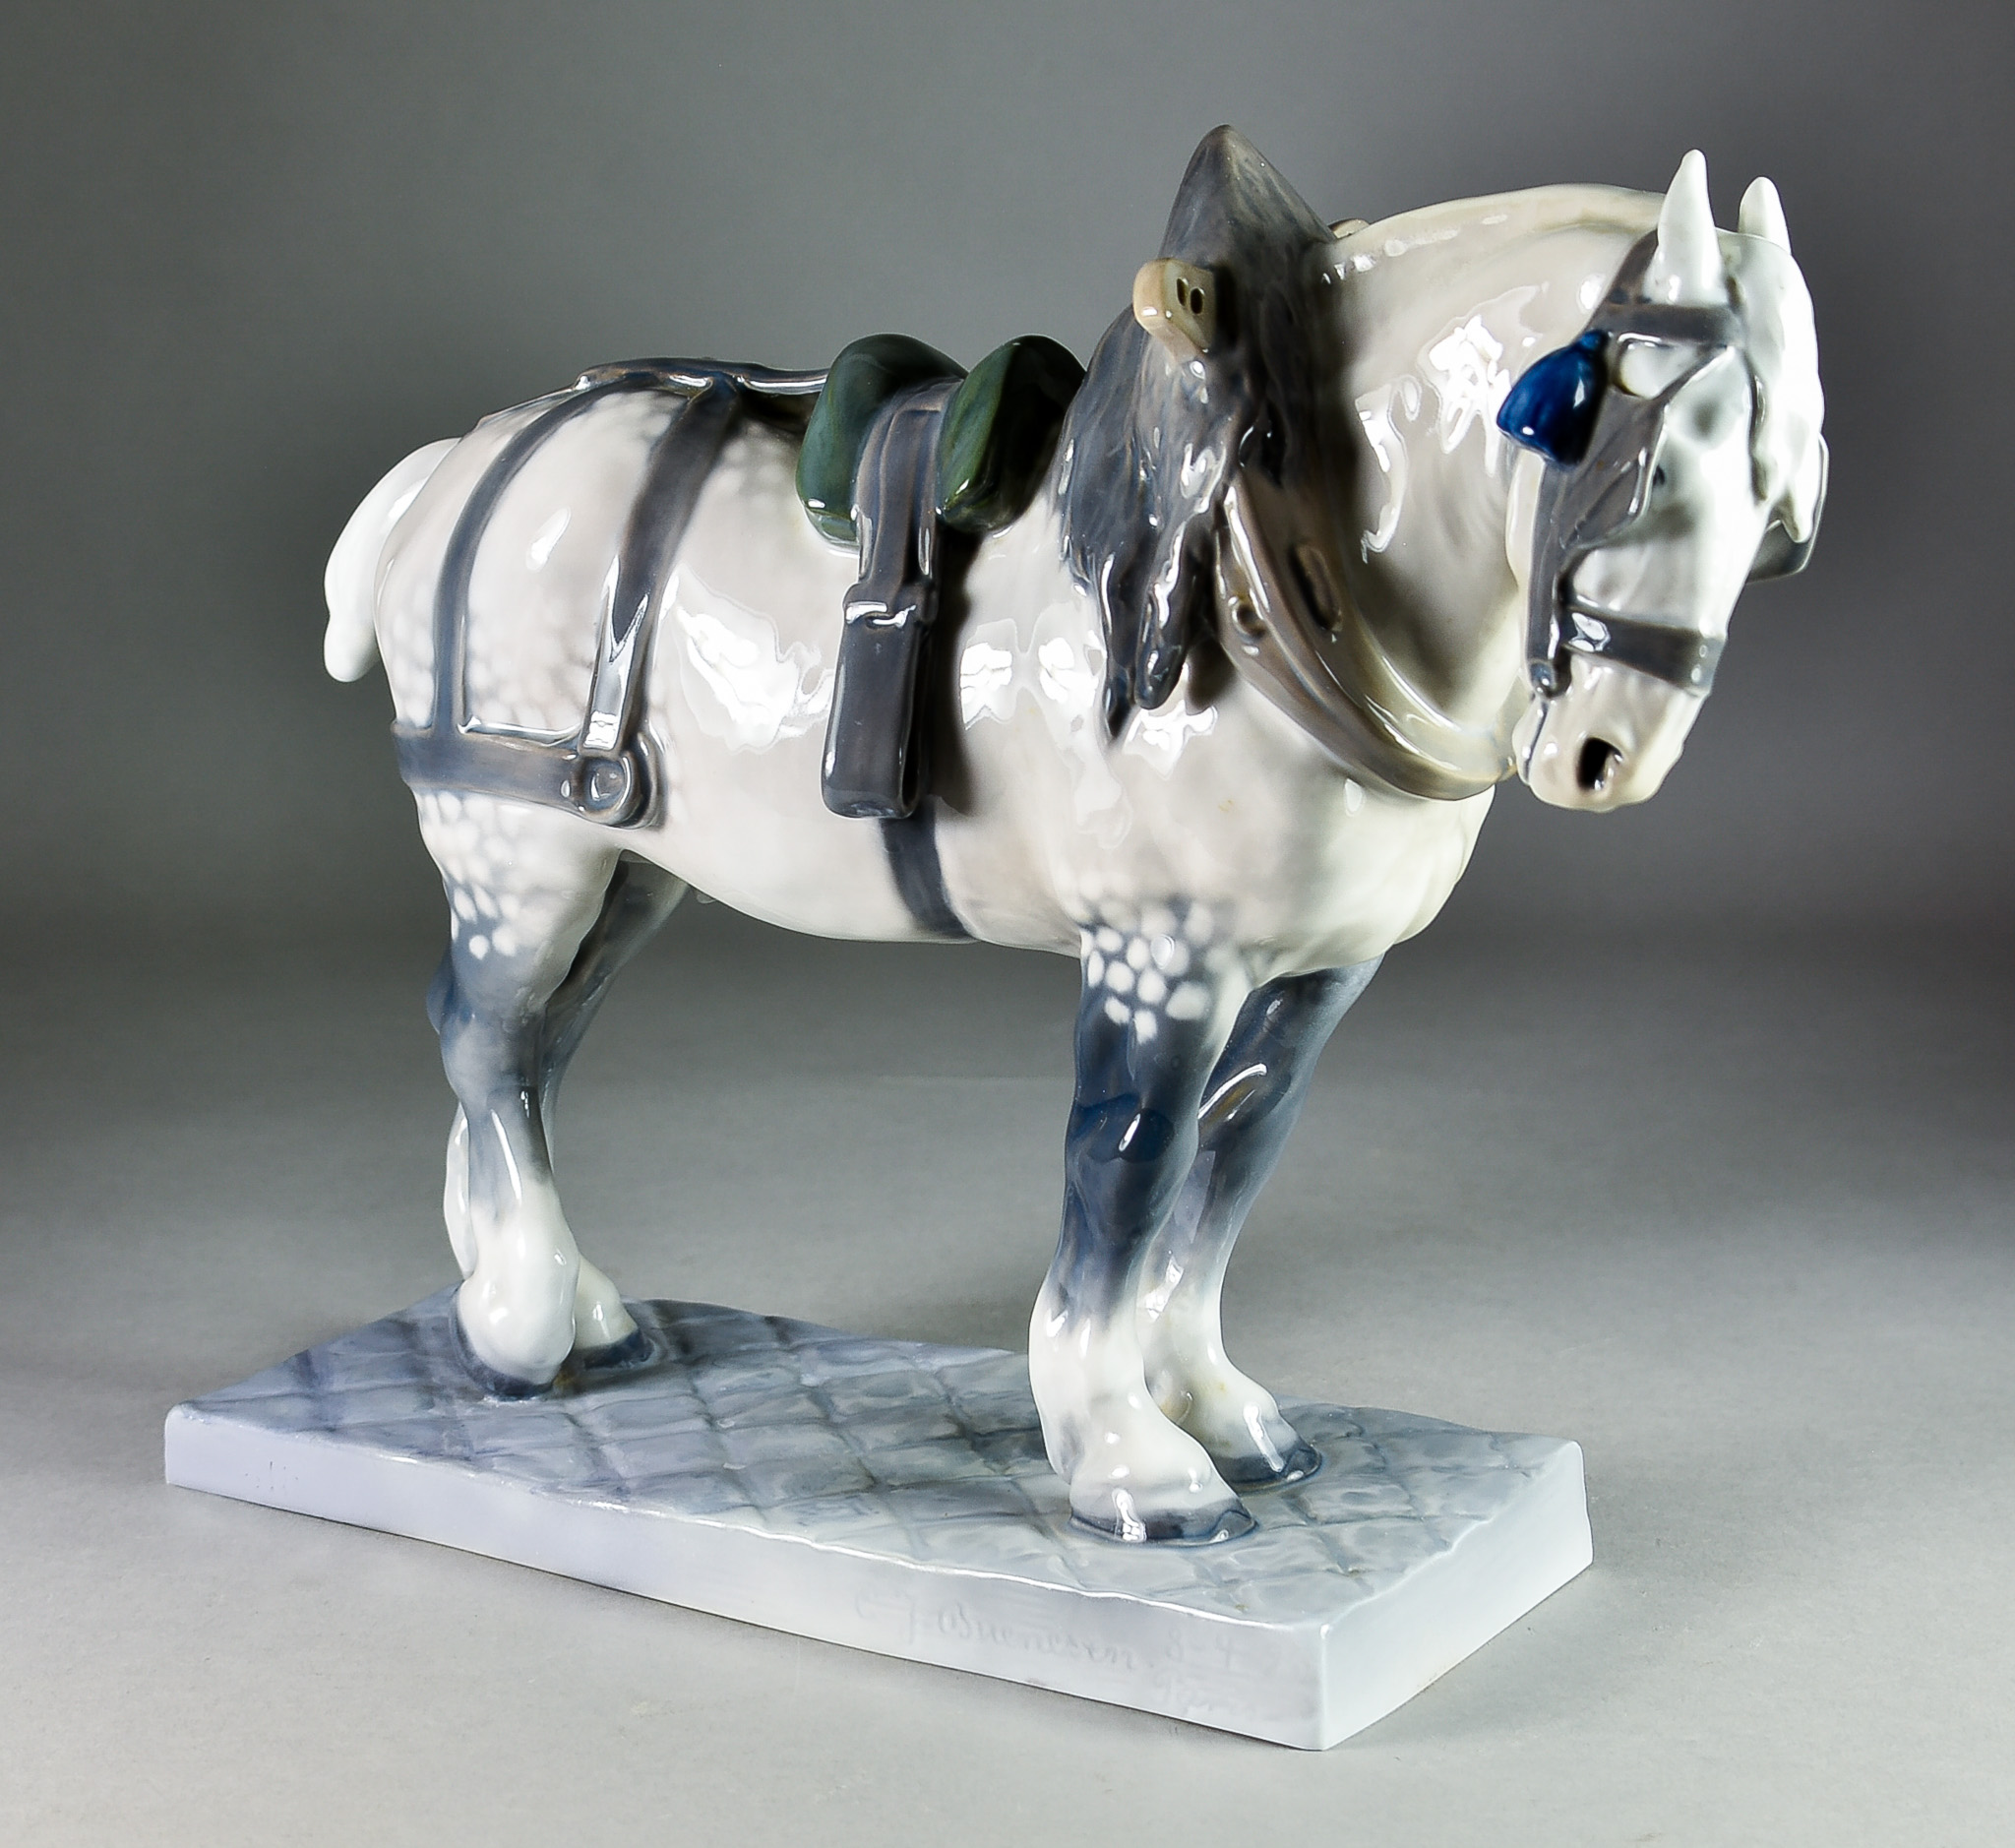 A Royal Copenhagen Porcelain Figure - Shire Horse (Percheron), designed by CJ Bonneson, No.471,